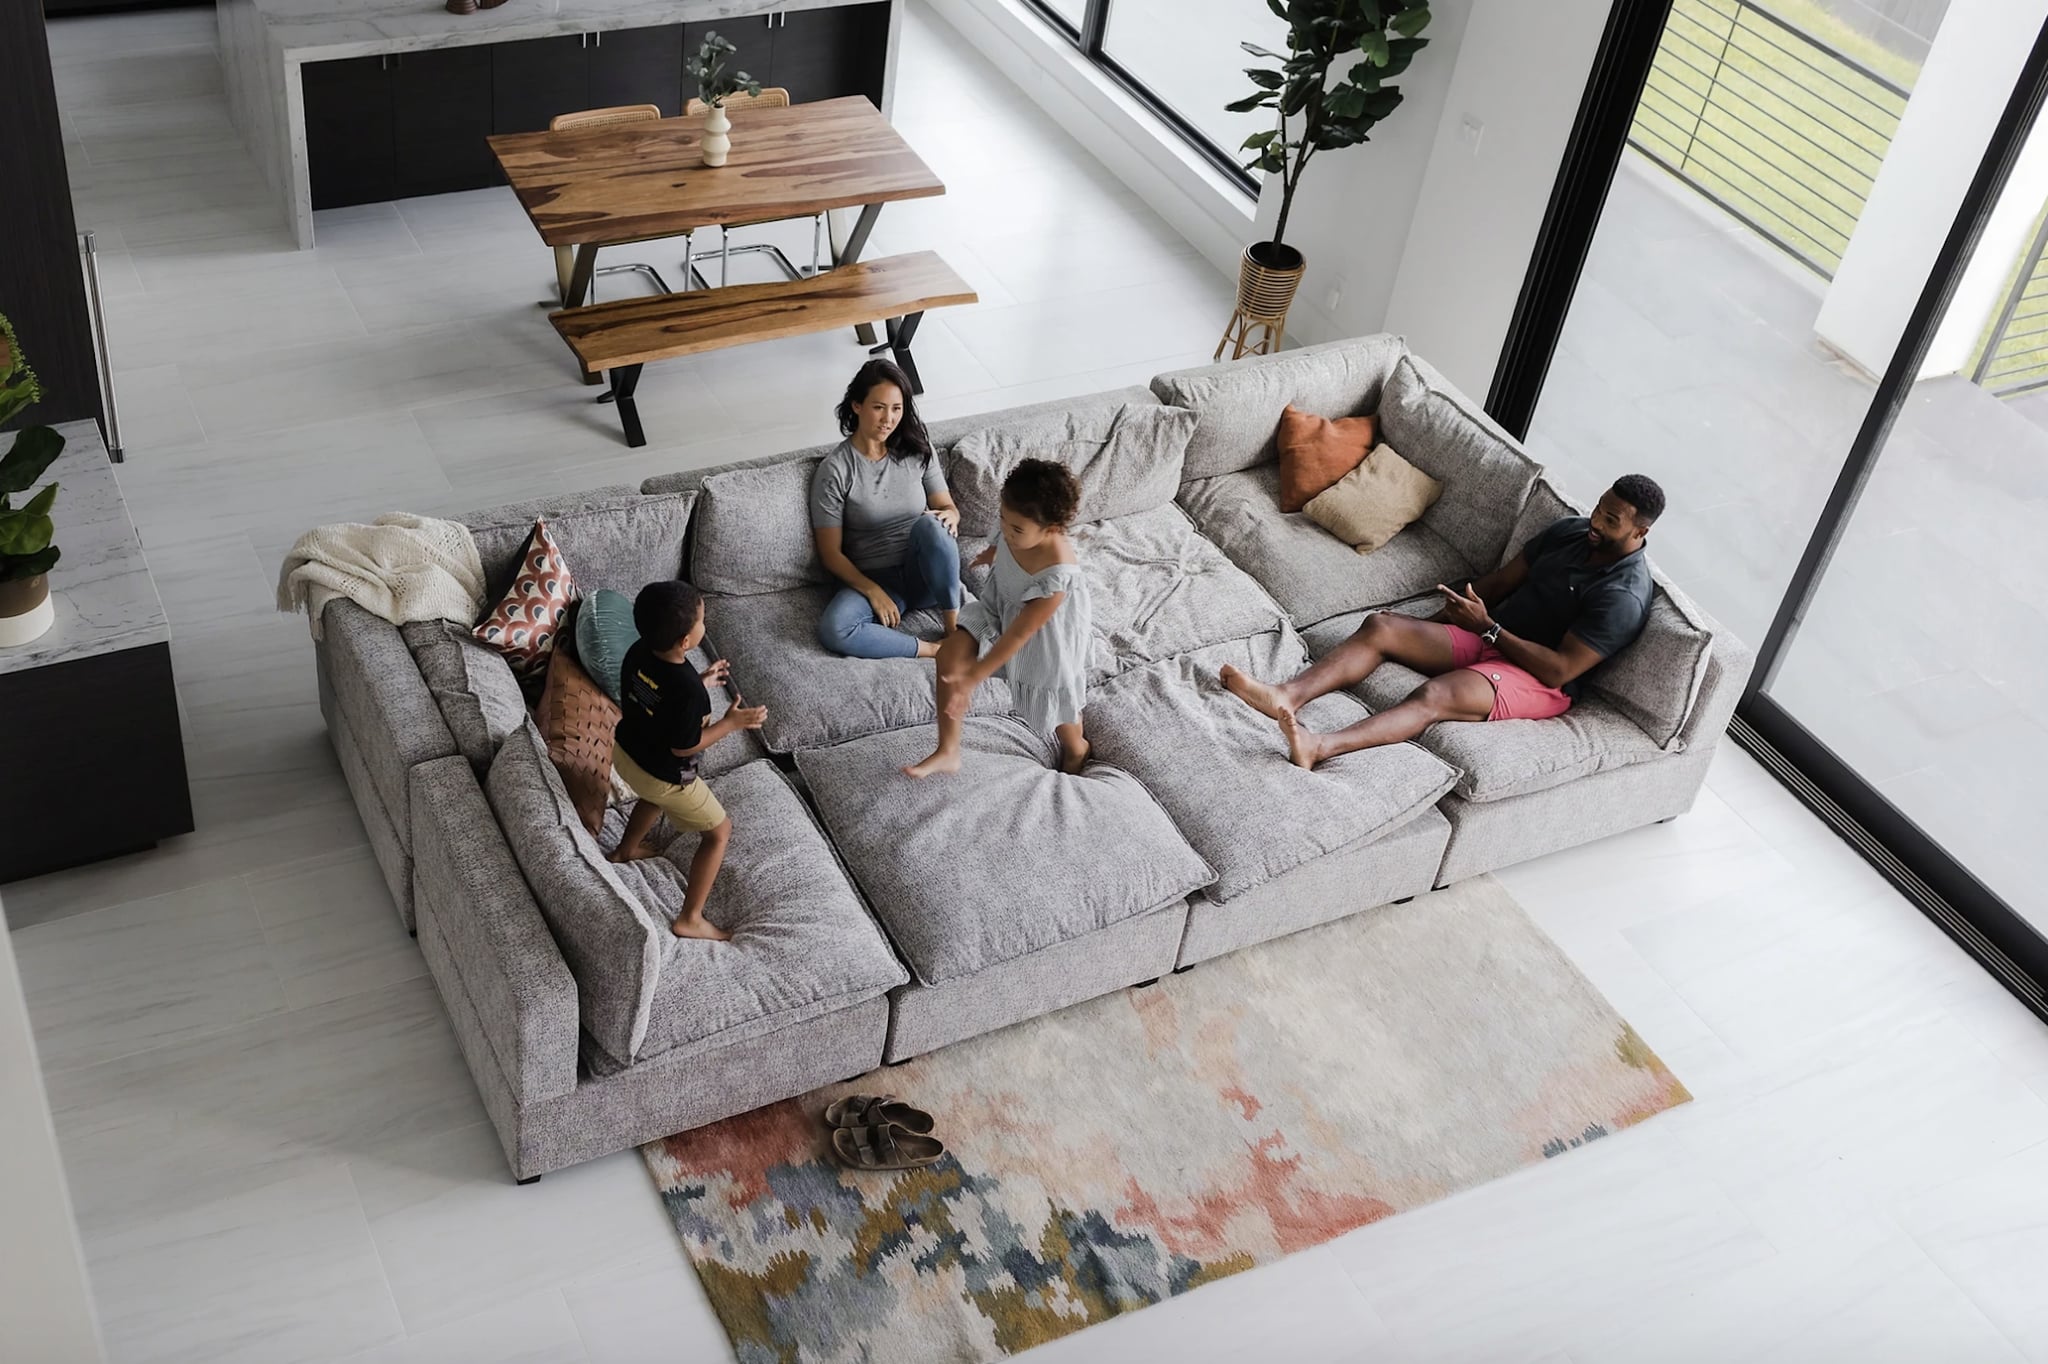 kwaliteit moeilijk tevreden te krijgen ik heb nodig Living Room Furniture For Large Families 2022 | POPSUGAR Home